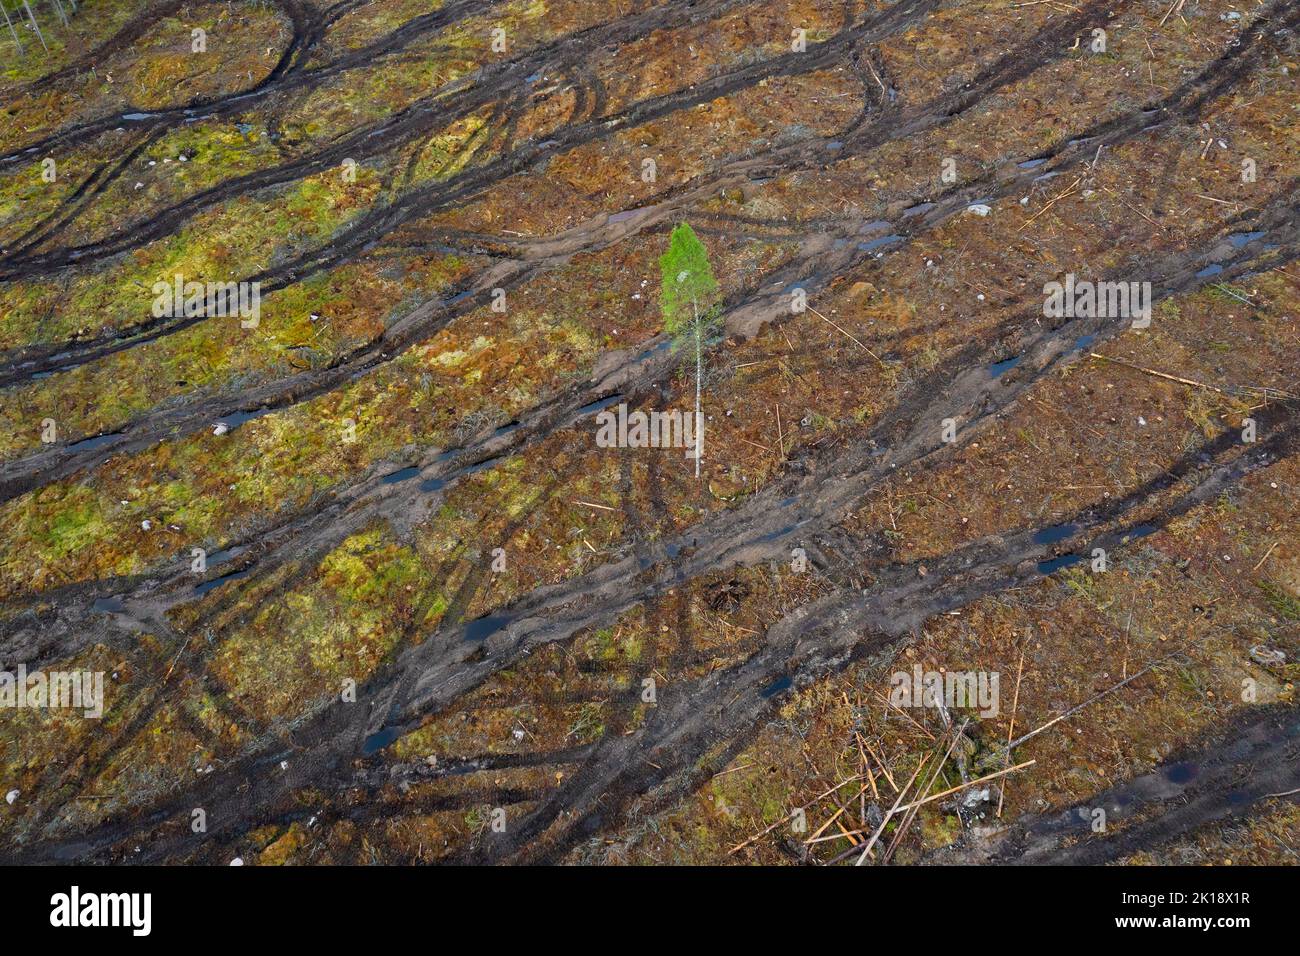 Albero solitario in taglio netto che mostra i cingoli caterpillar, il taglio netto / lo svuotamento è una pratica di silvicoltura / disboscamento in cui tutti gli alberi sono tagliati Foto Stock